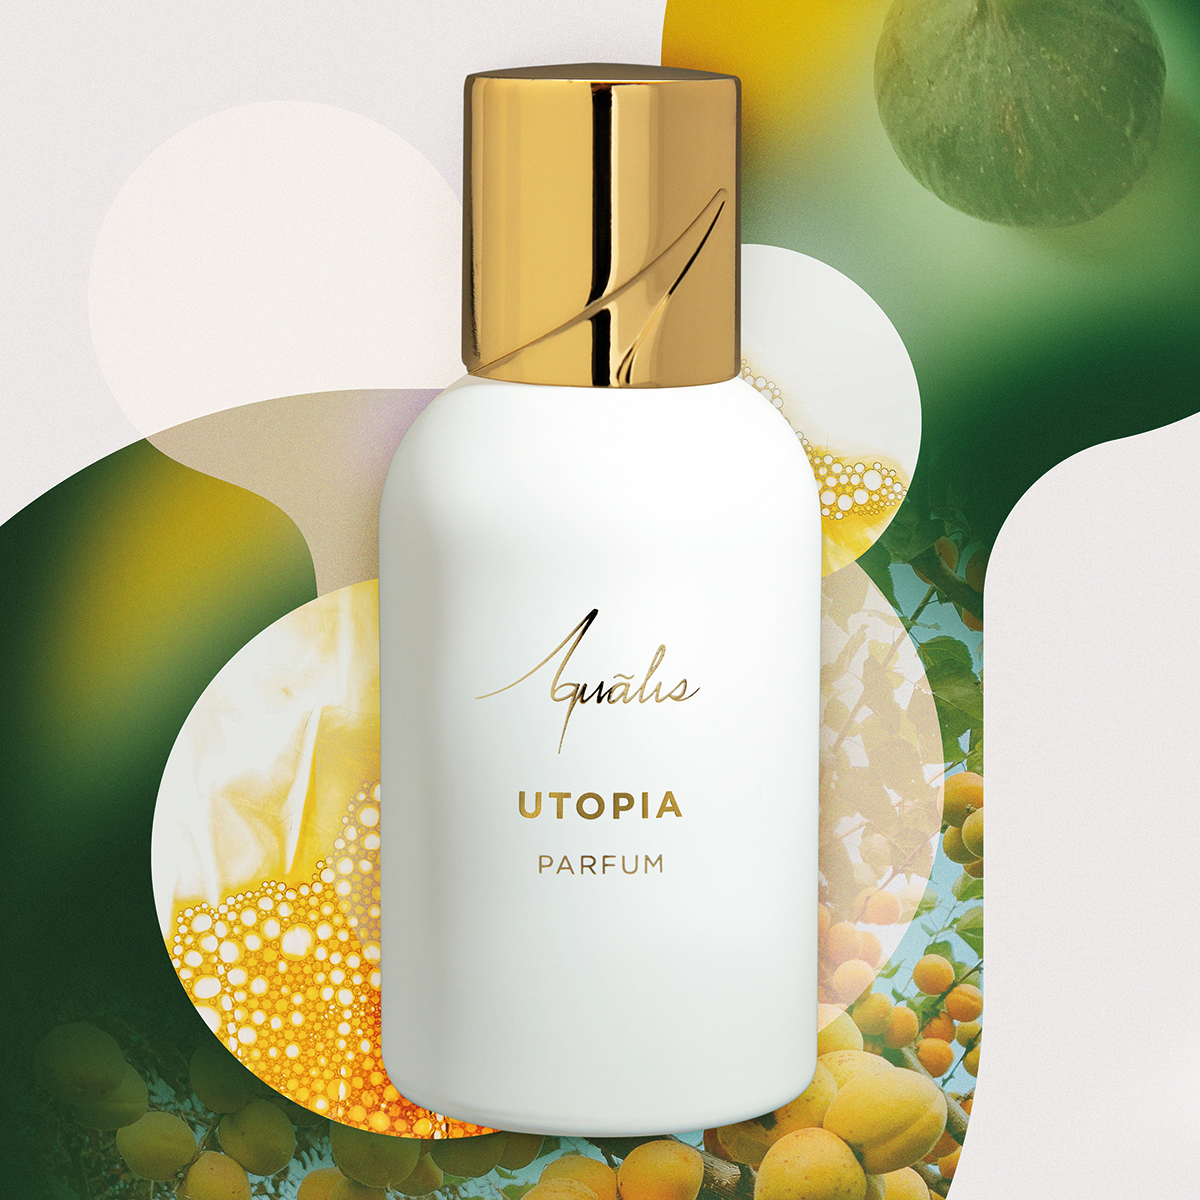 Aqualis - Utopia Extrait de Parfum